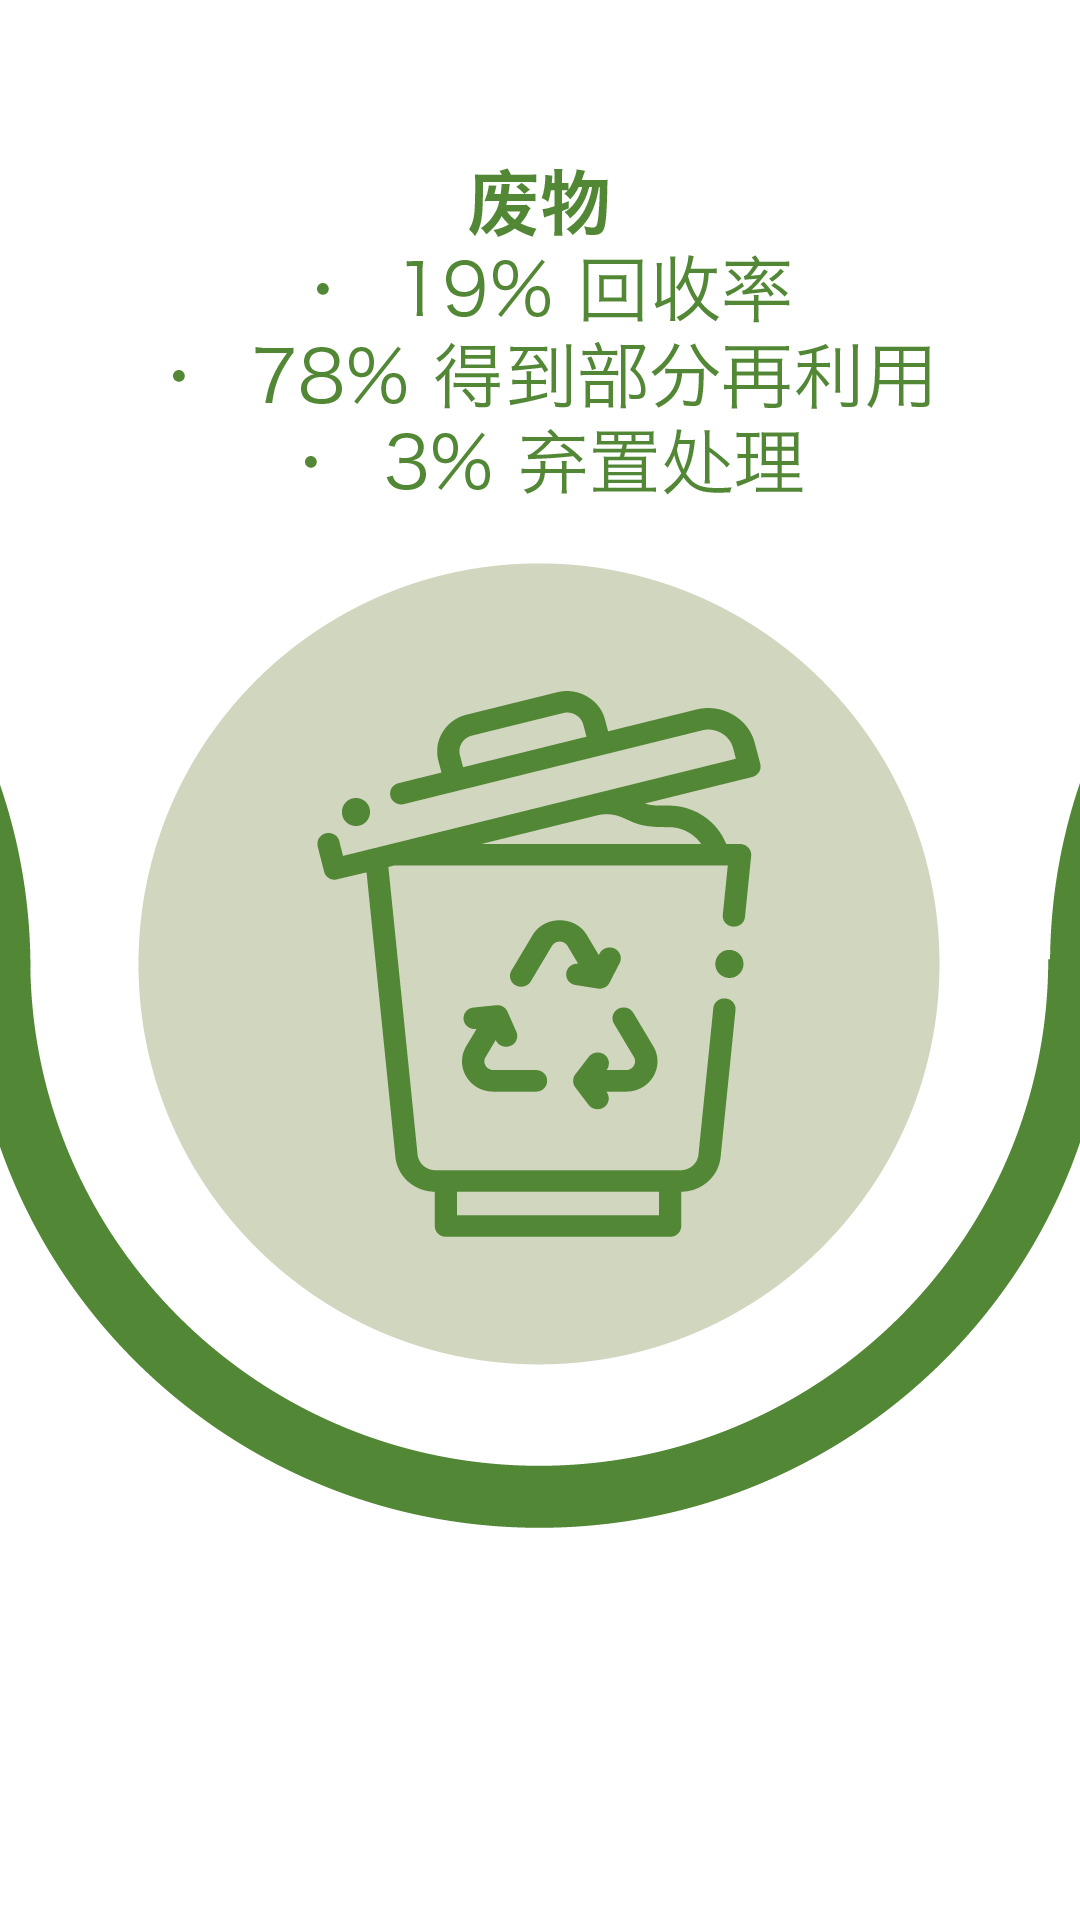 废物 - 19% 回收率, 78% 得到部分再利用, 3% 弃置处理